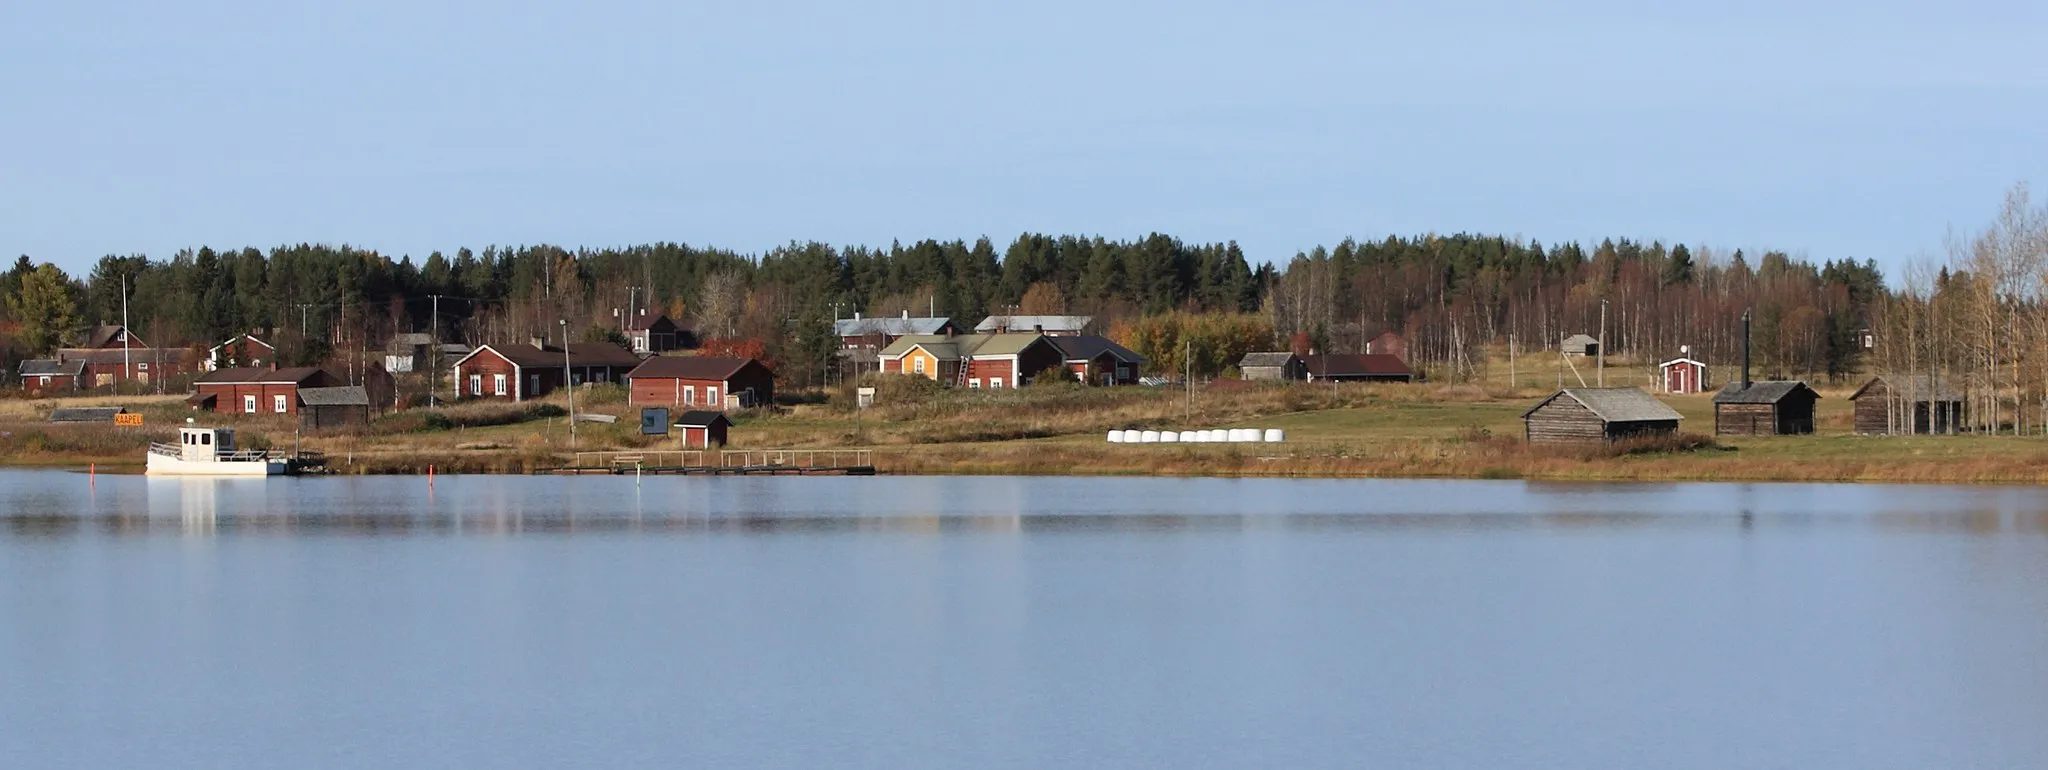 Photo showing: Suvanto village by Kitinen river in Pelkosenniemi, Finland.